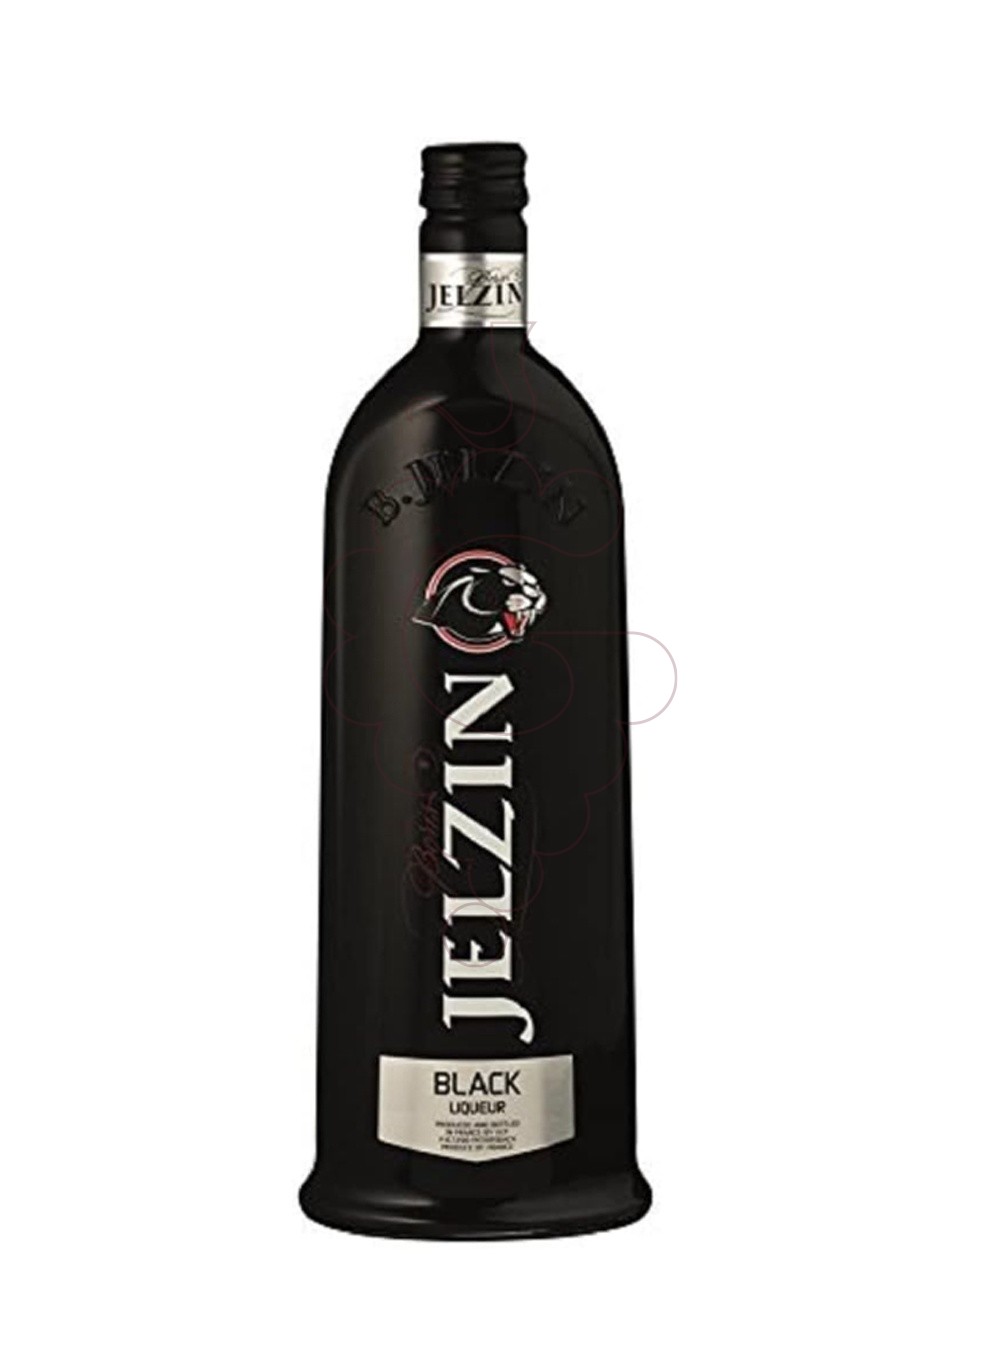 Photo Liqueur Jelzin pure black liqueur 70cl